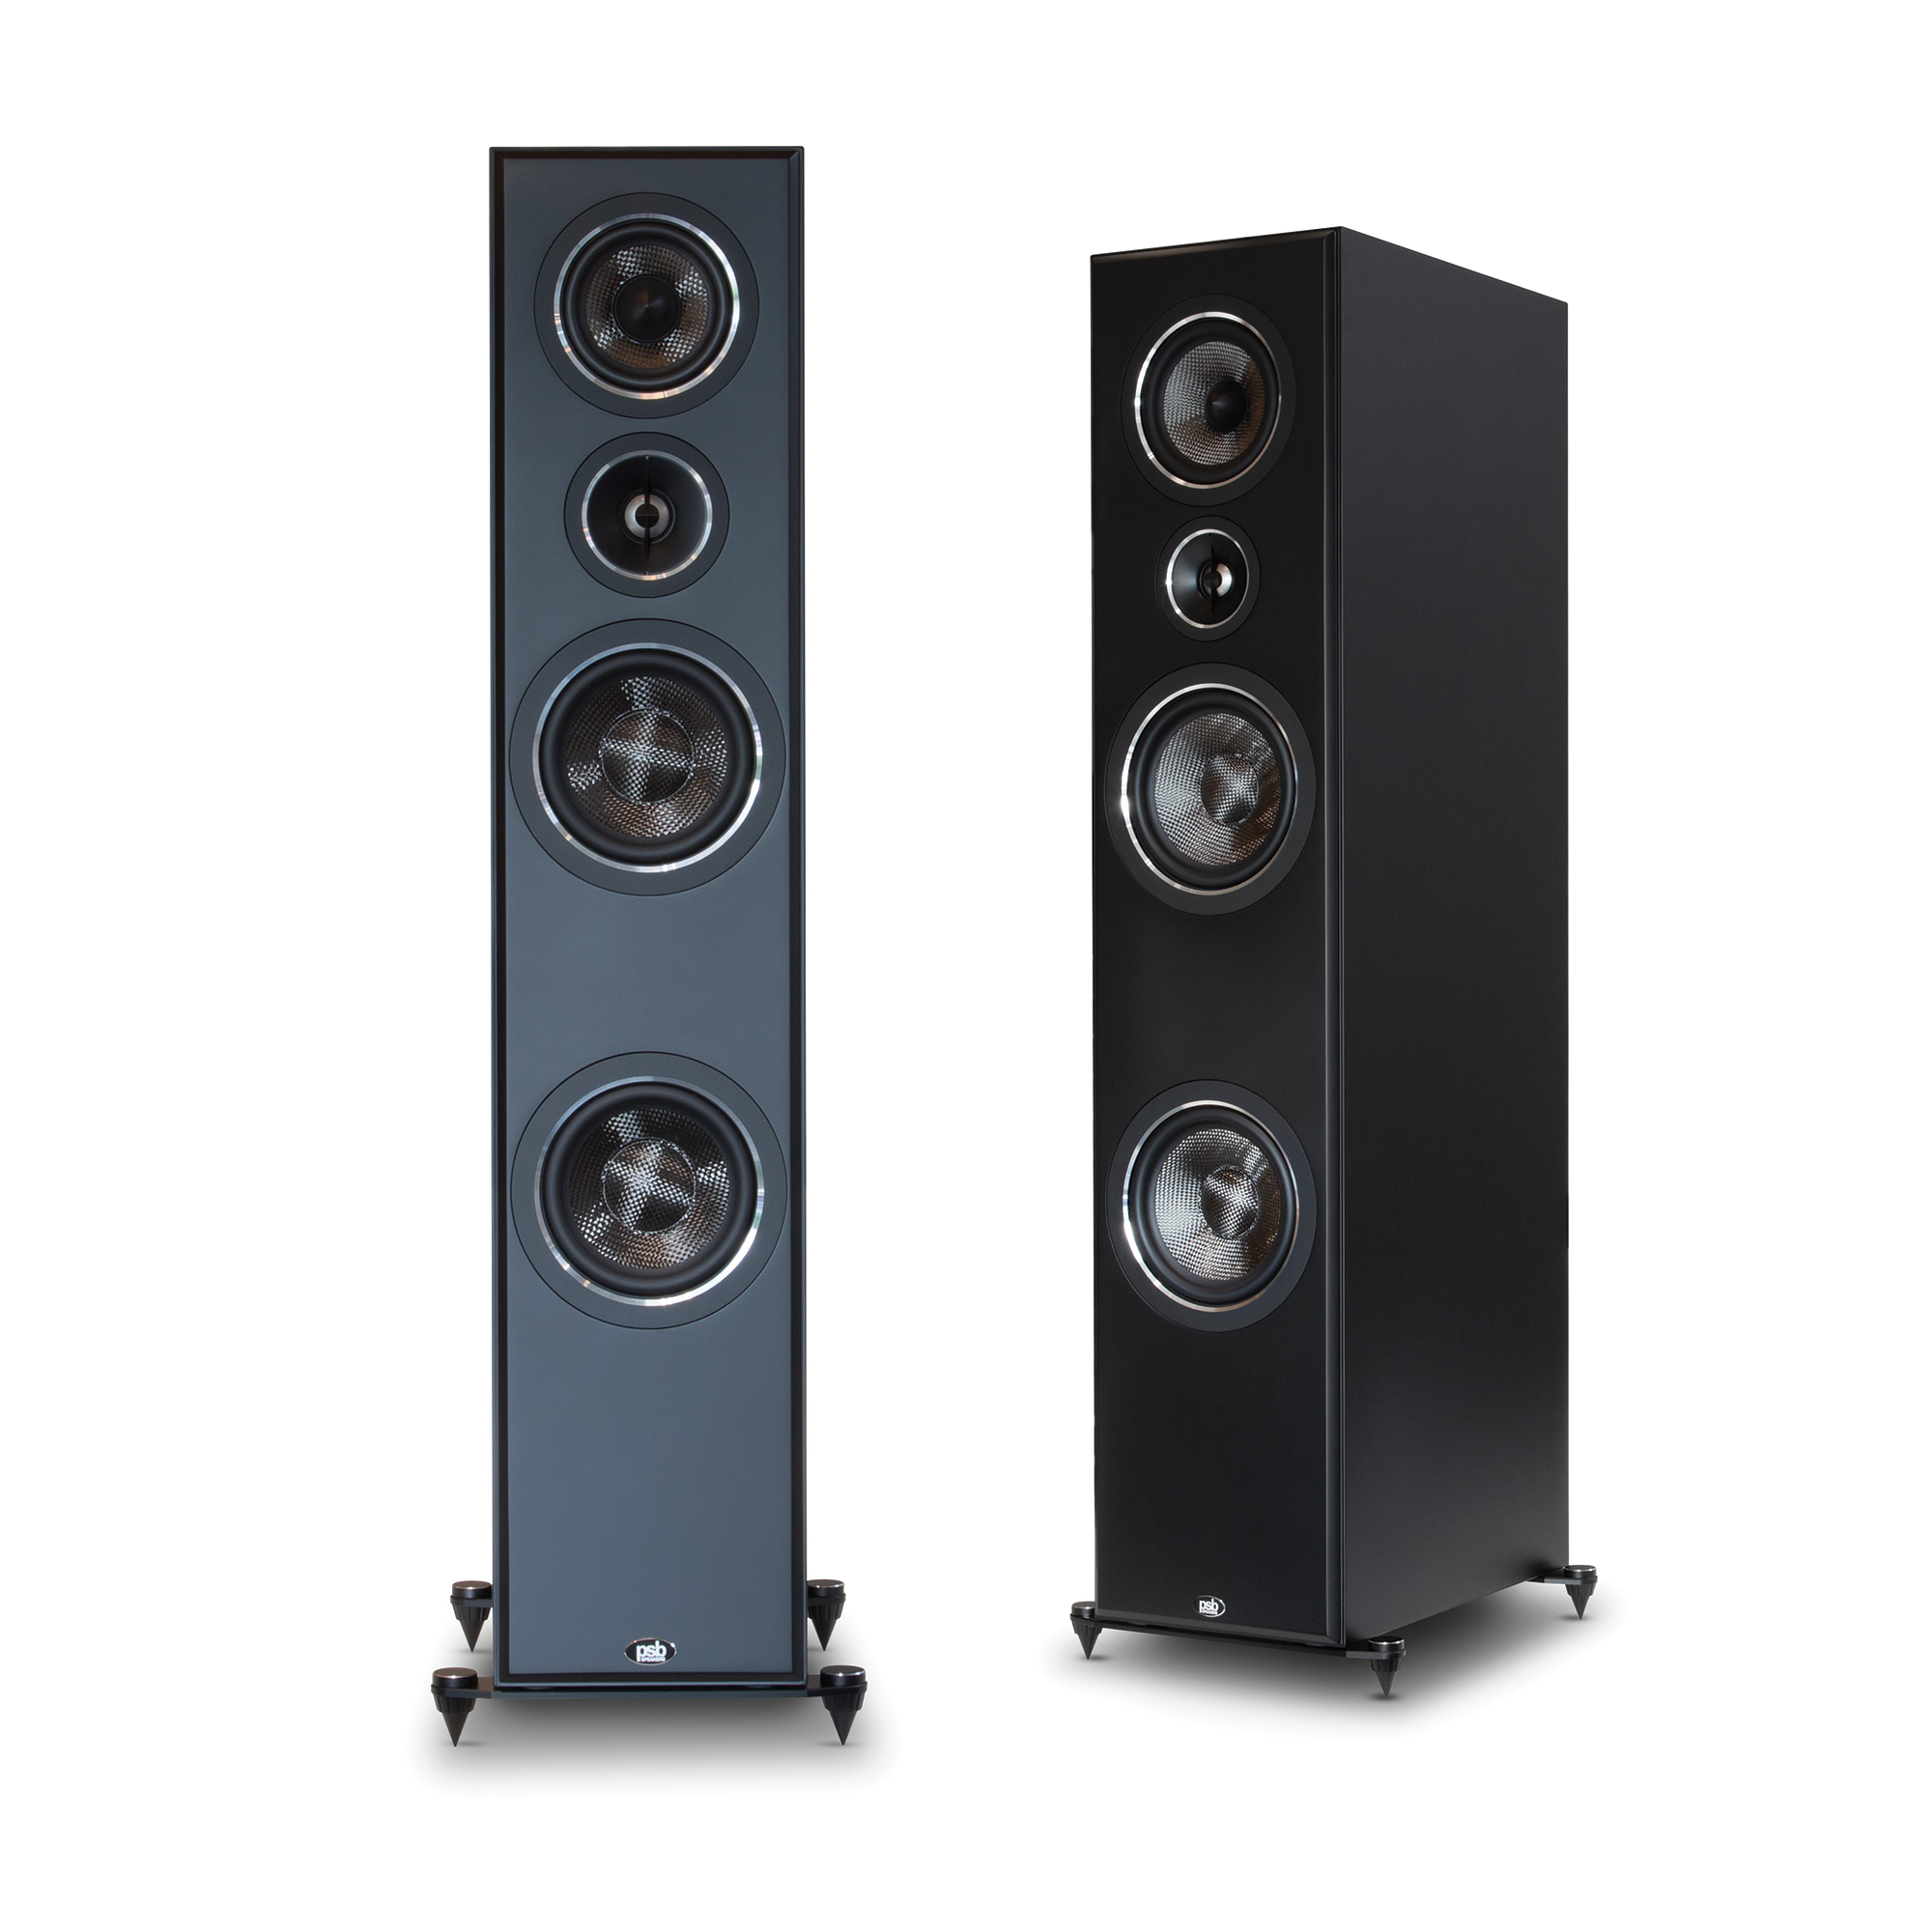 Imagine-T54-tower-speaker-pair-black.jpg